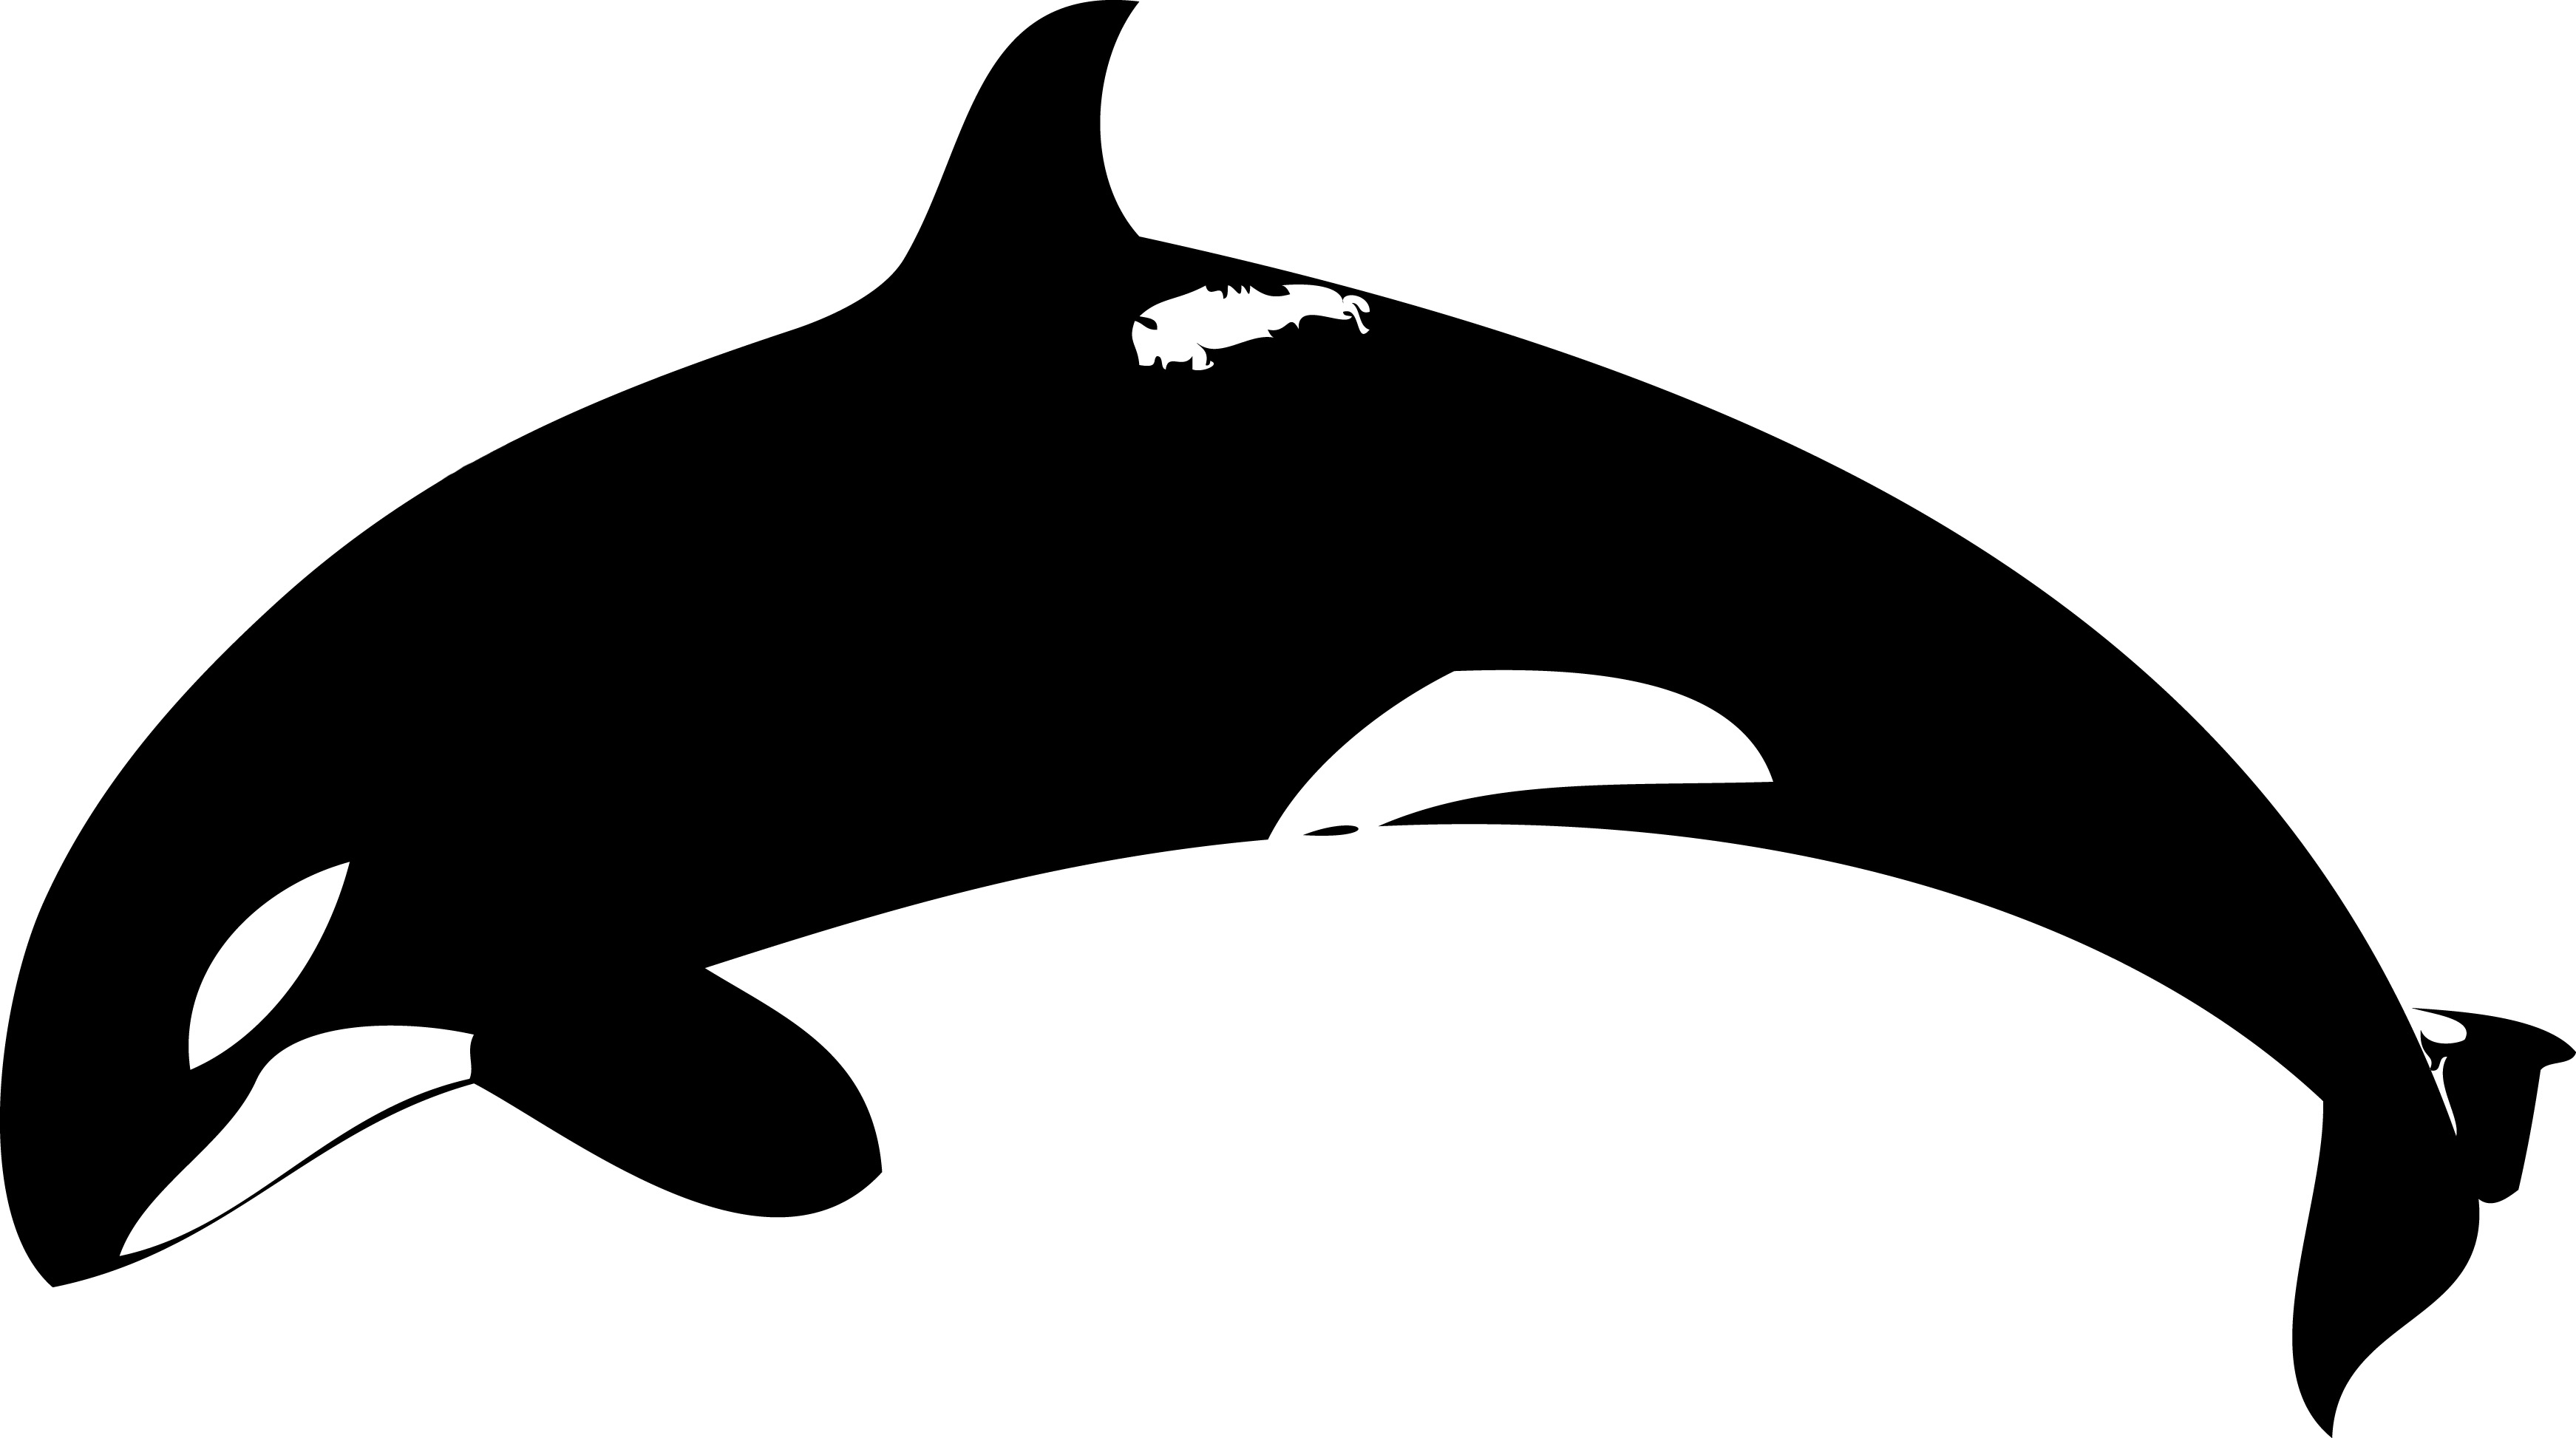 orca clipart #4